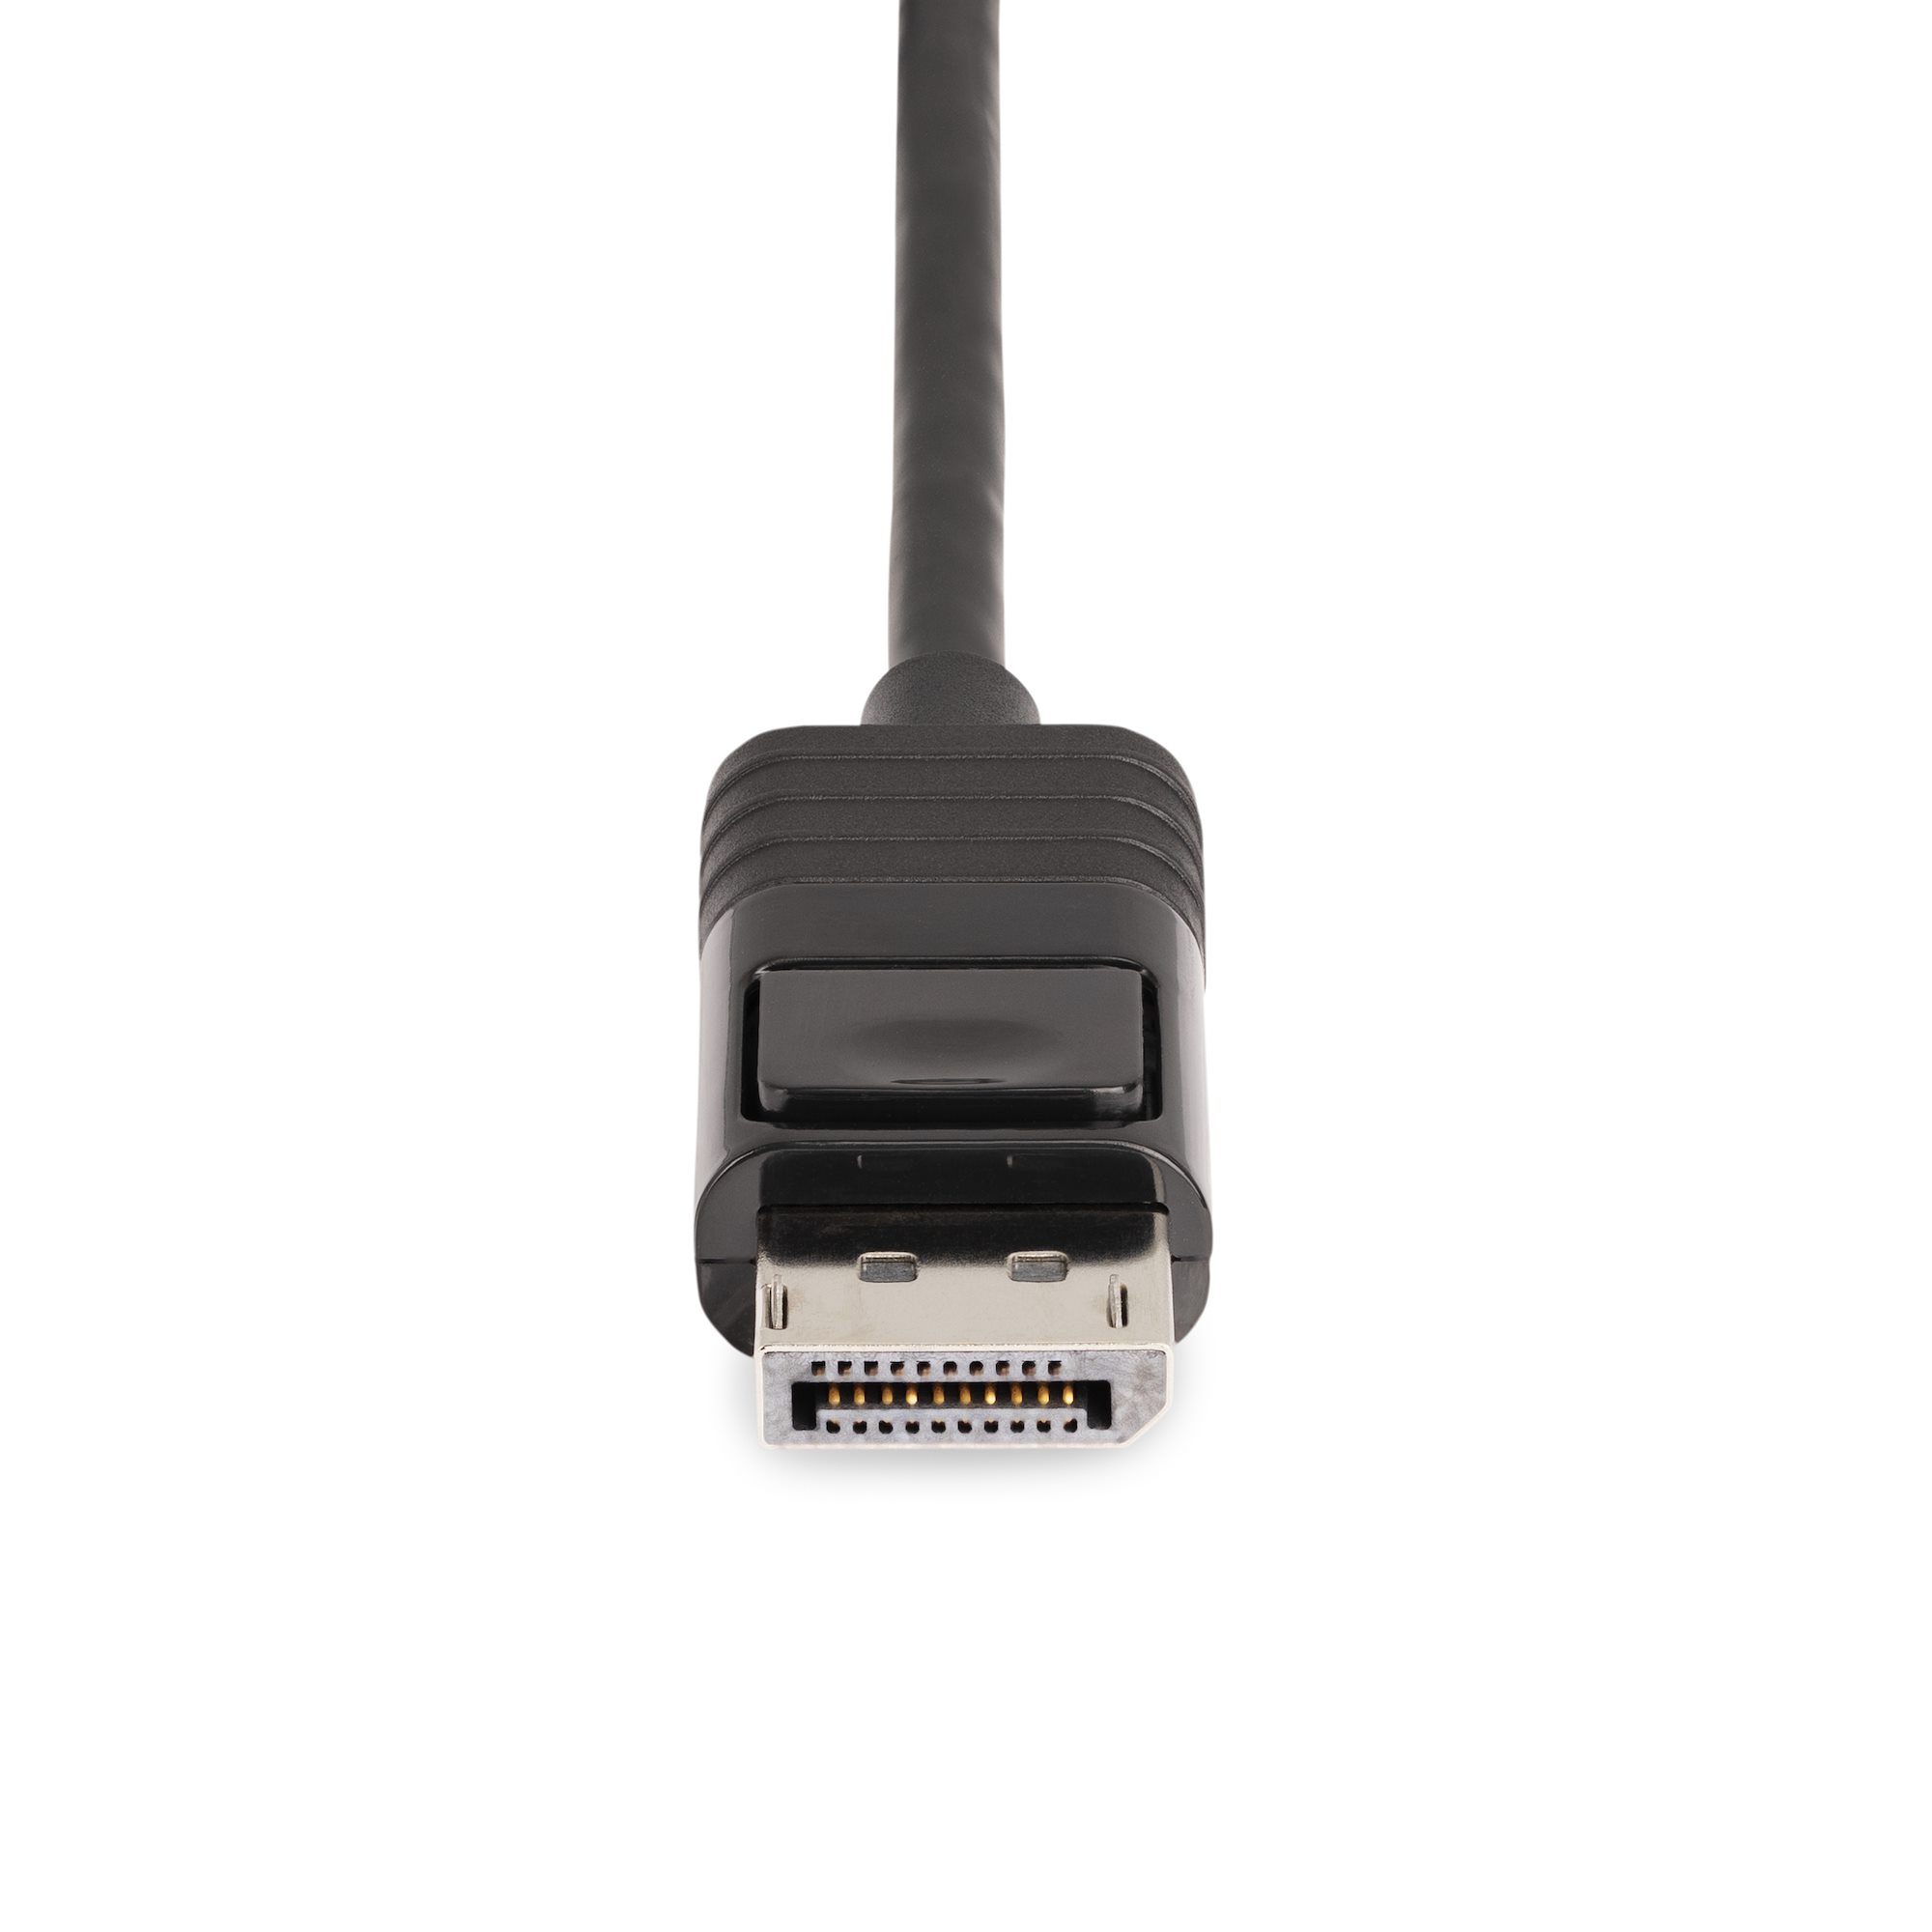 1x3 DisplayPort 1.4 to DP MST Hub/Splitter (PRO-MSTDP3DP14)